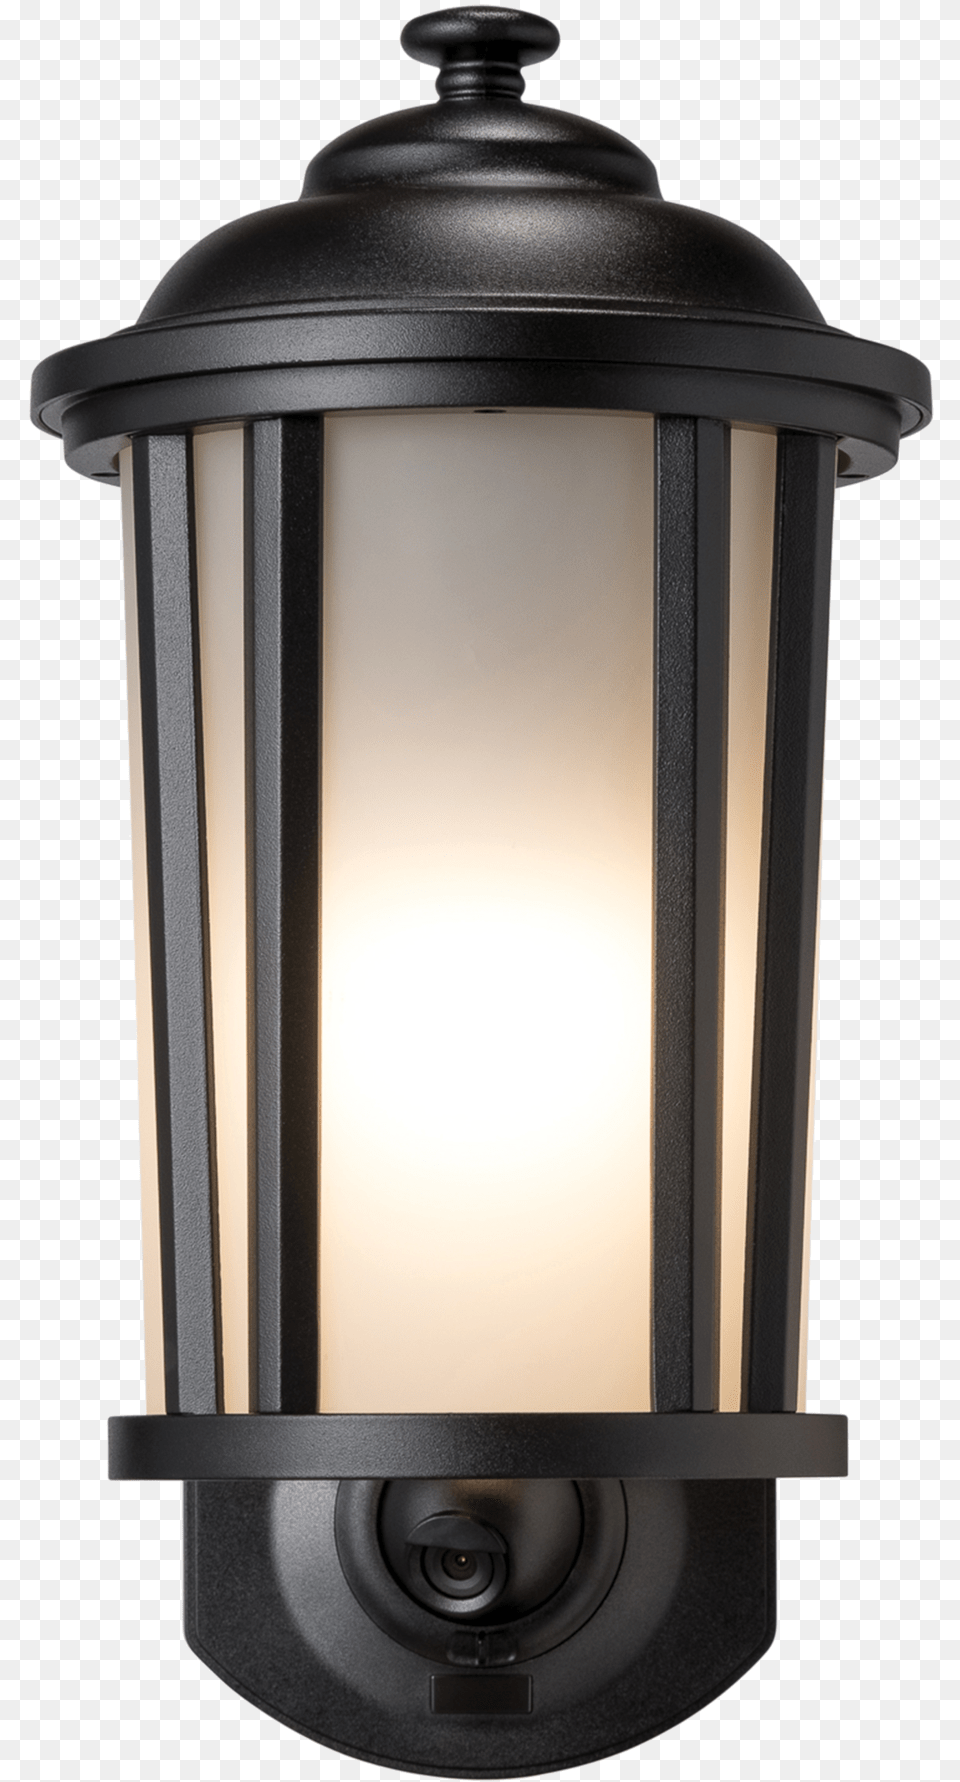 Exterior Wall Light, Lamp, Light Fixture, Mailbox Png Image